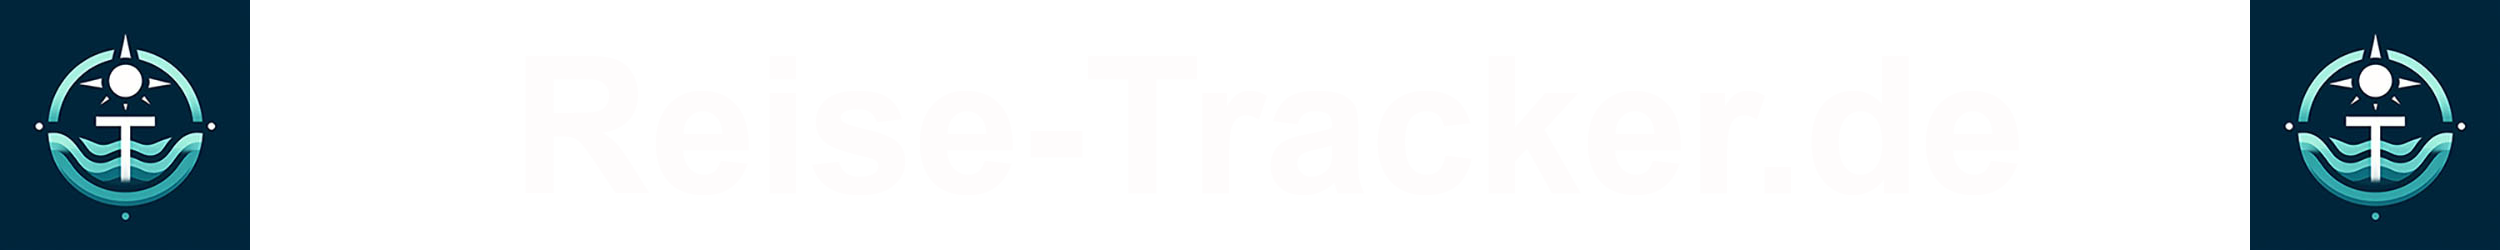 Reise-tracker Logo